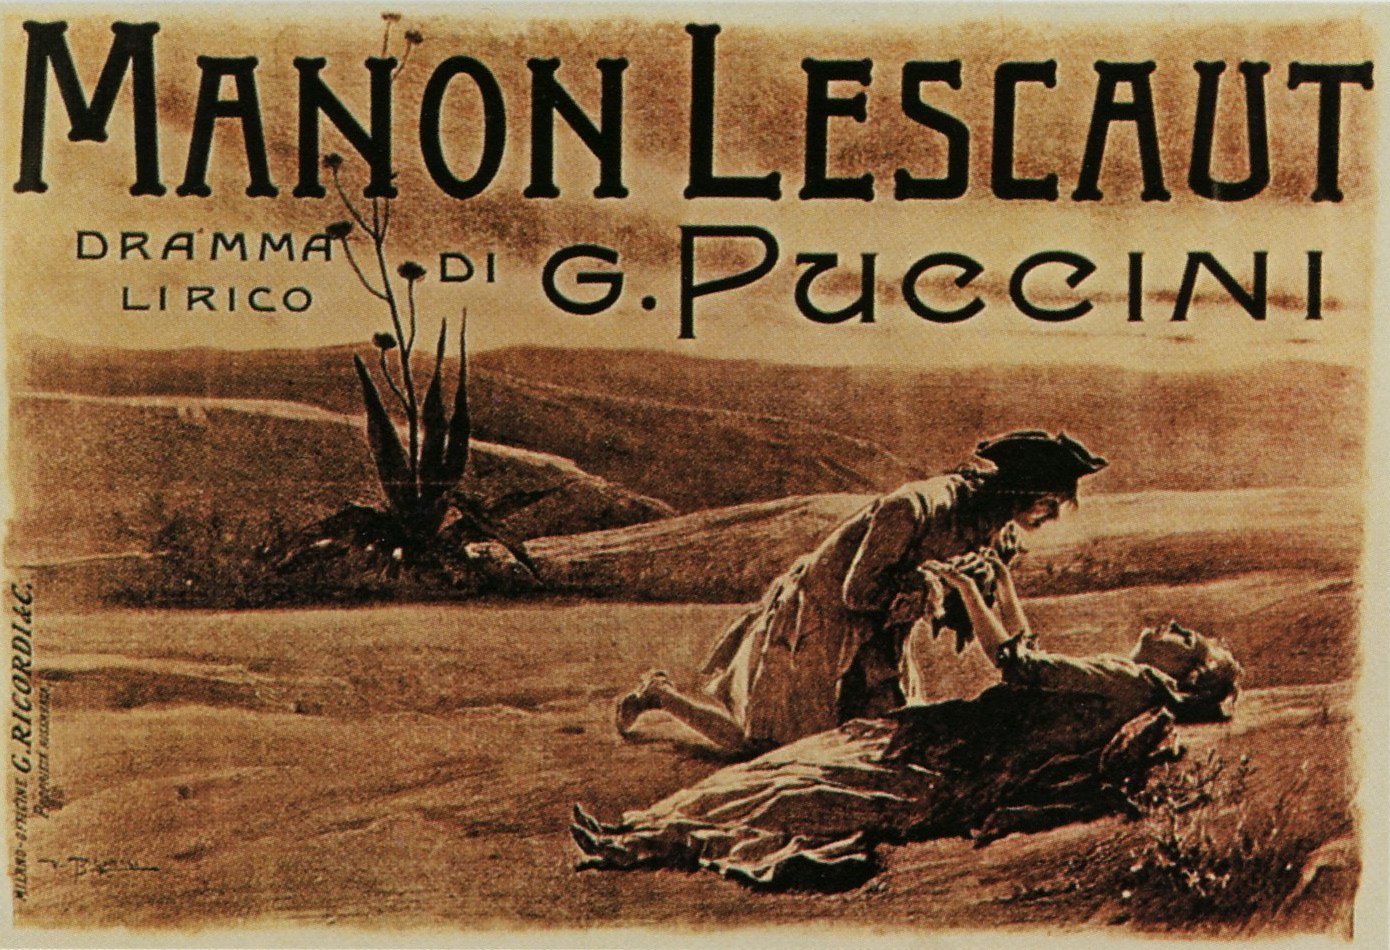 A Manon Lescaut ősbemutatójának plakátja - forrás: Wikipedia